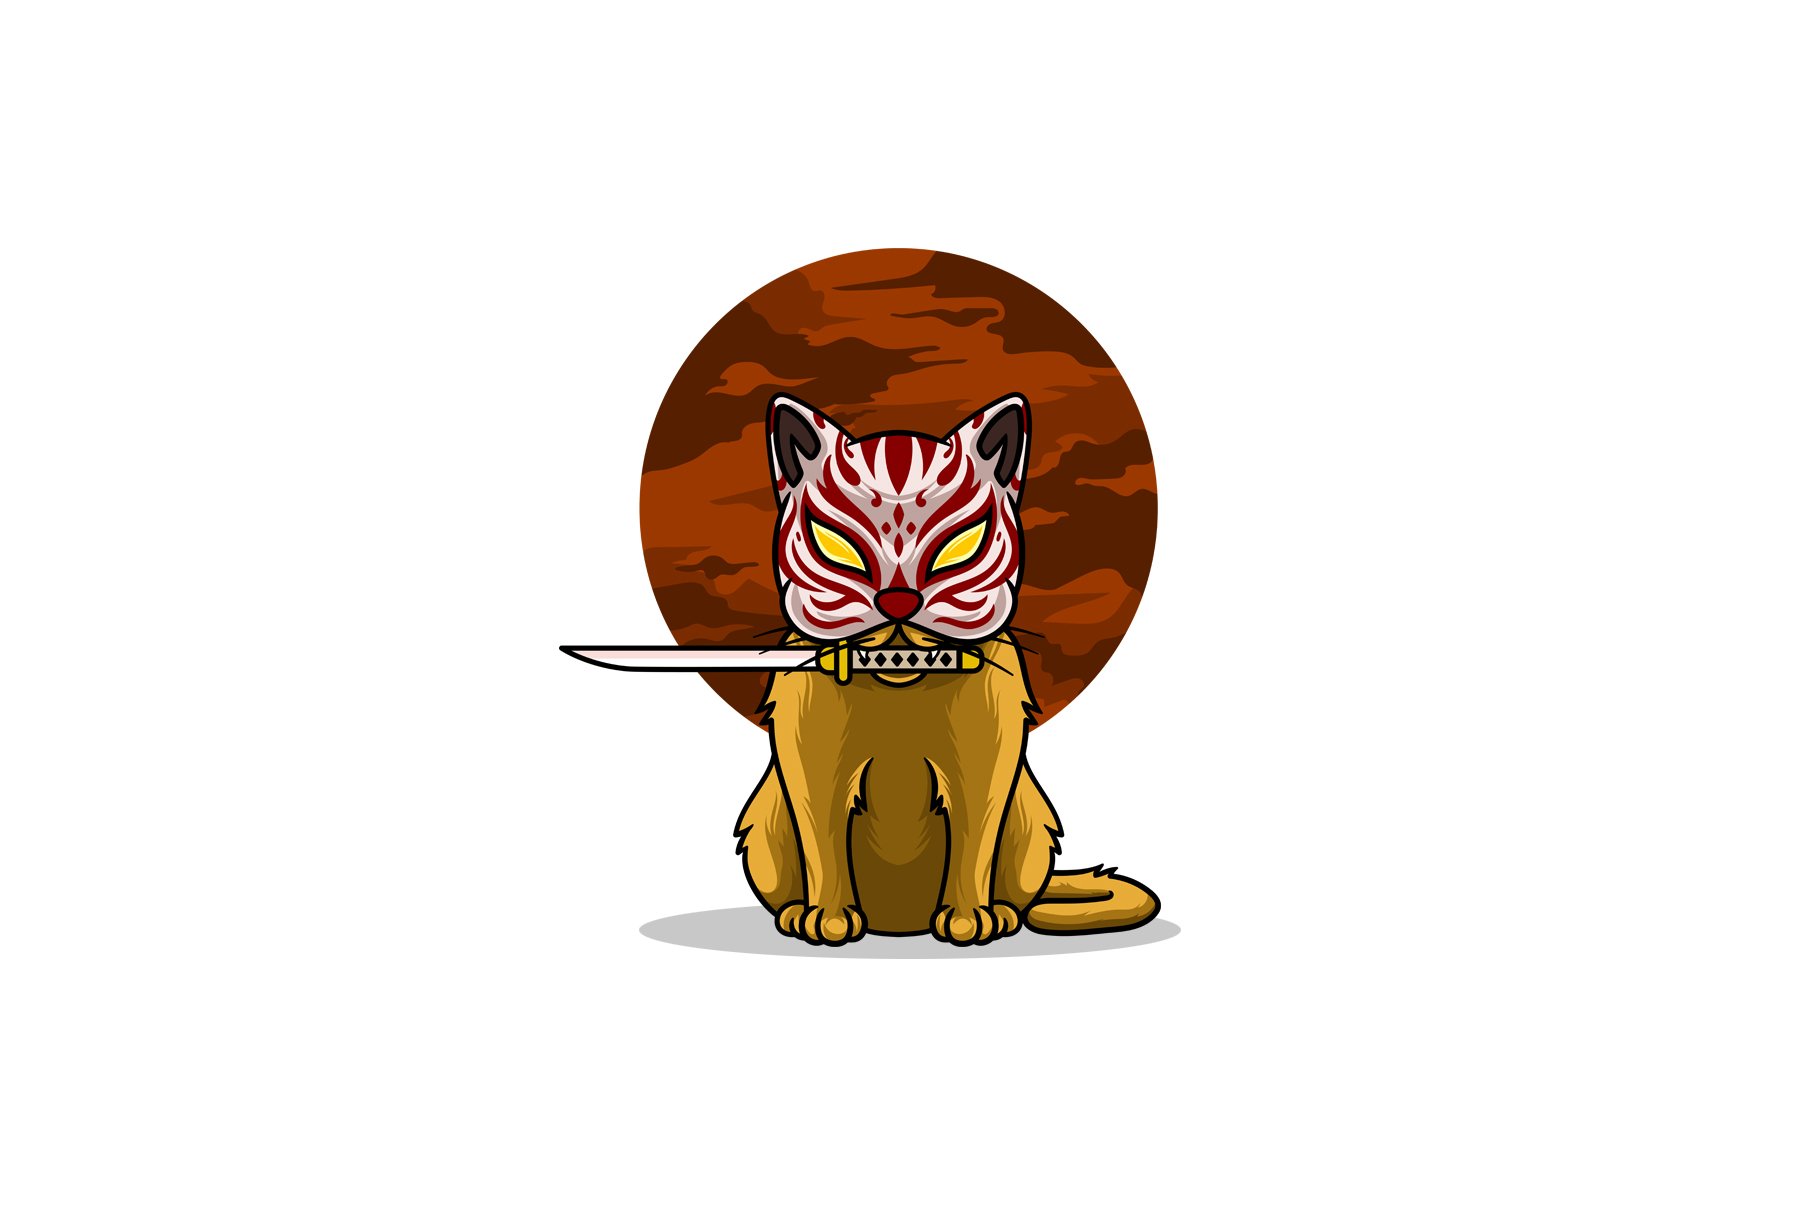 Samurai cat biting sword preview image.